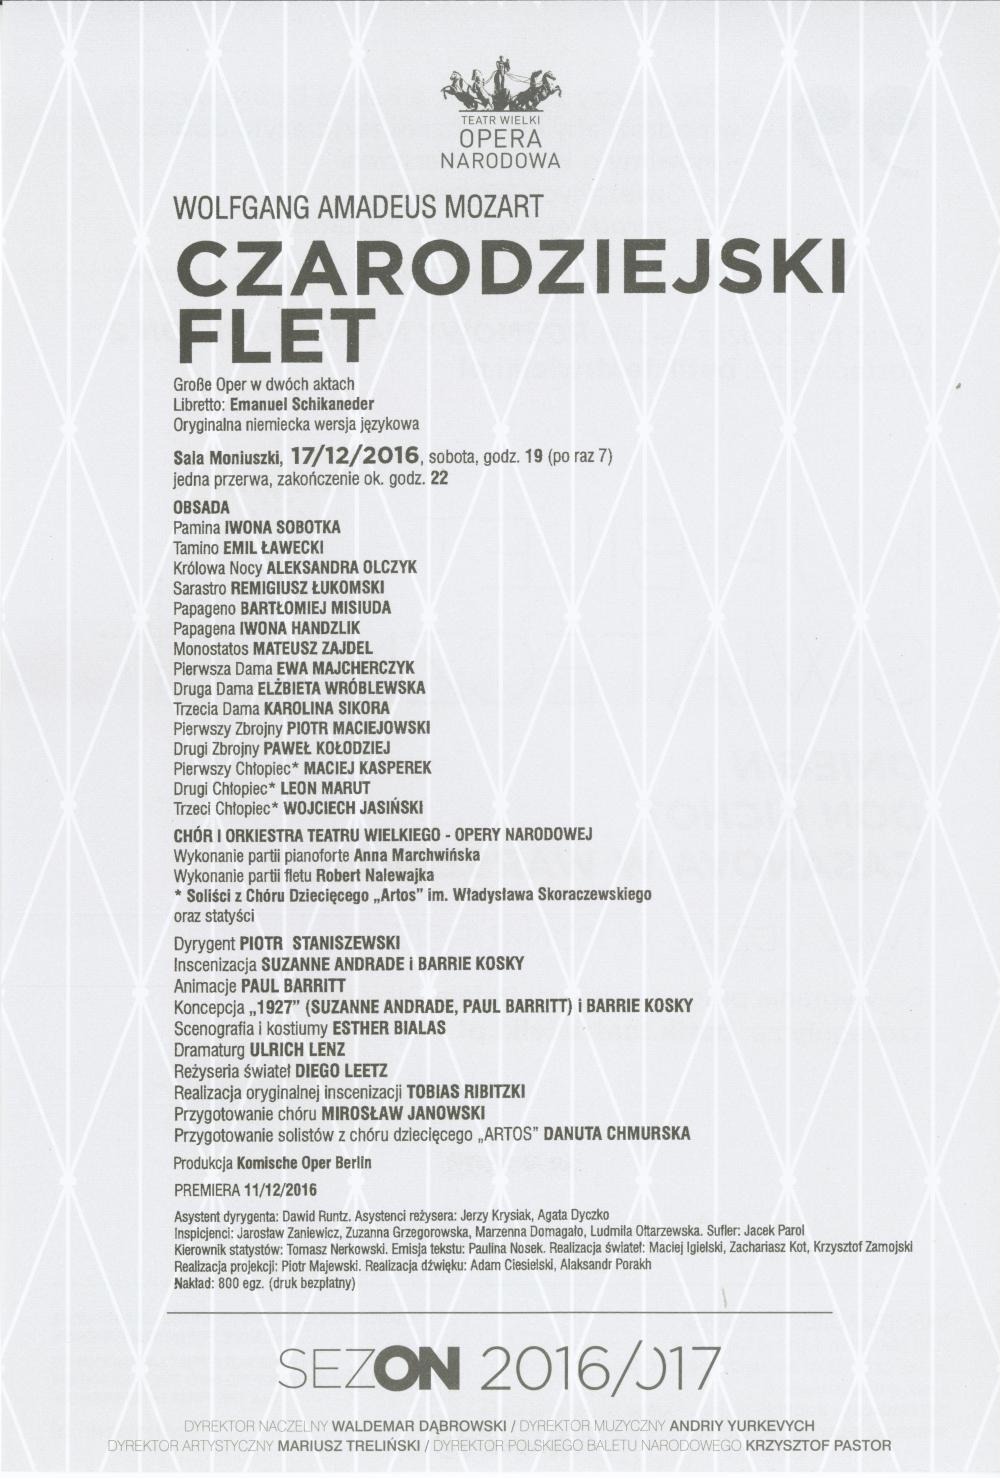 Wkładka obsadowa „Carodziejski flet” Wolfgang Amadeus Mozart premiera 2016-12-17